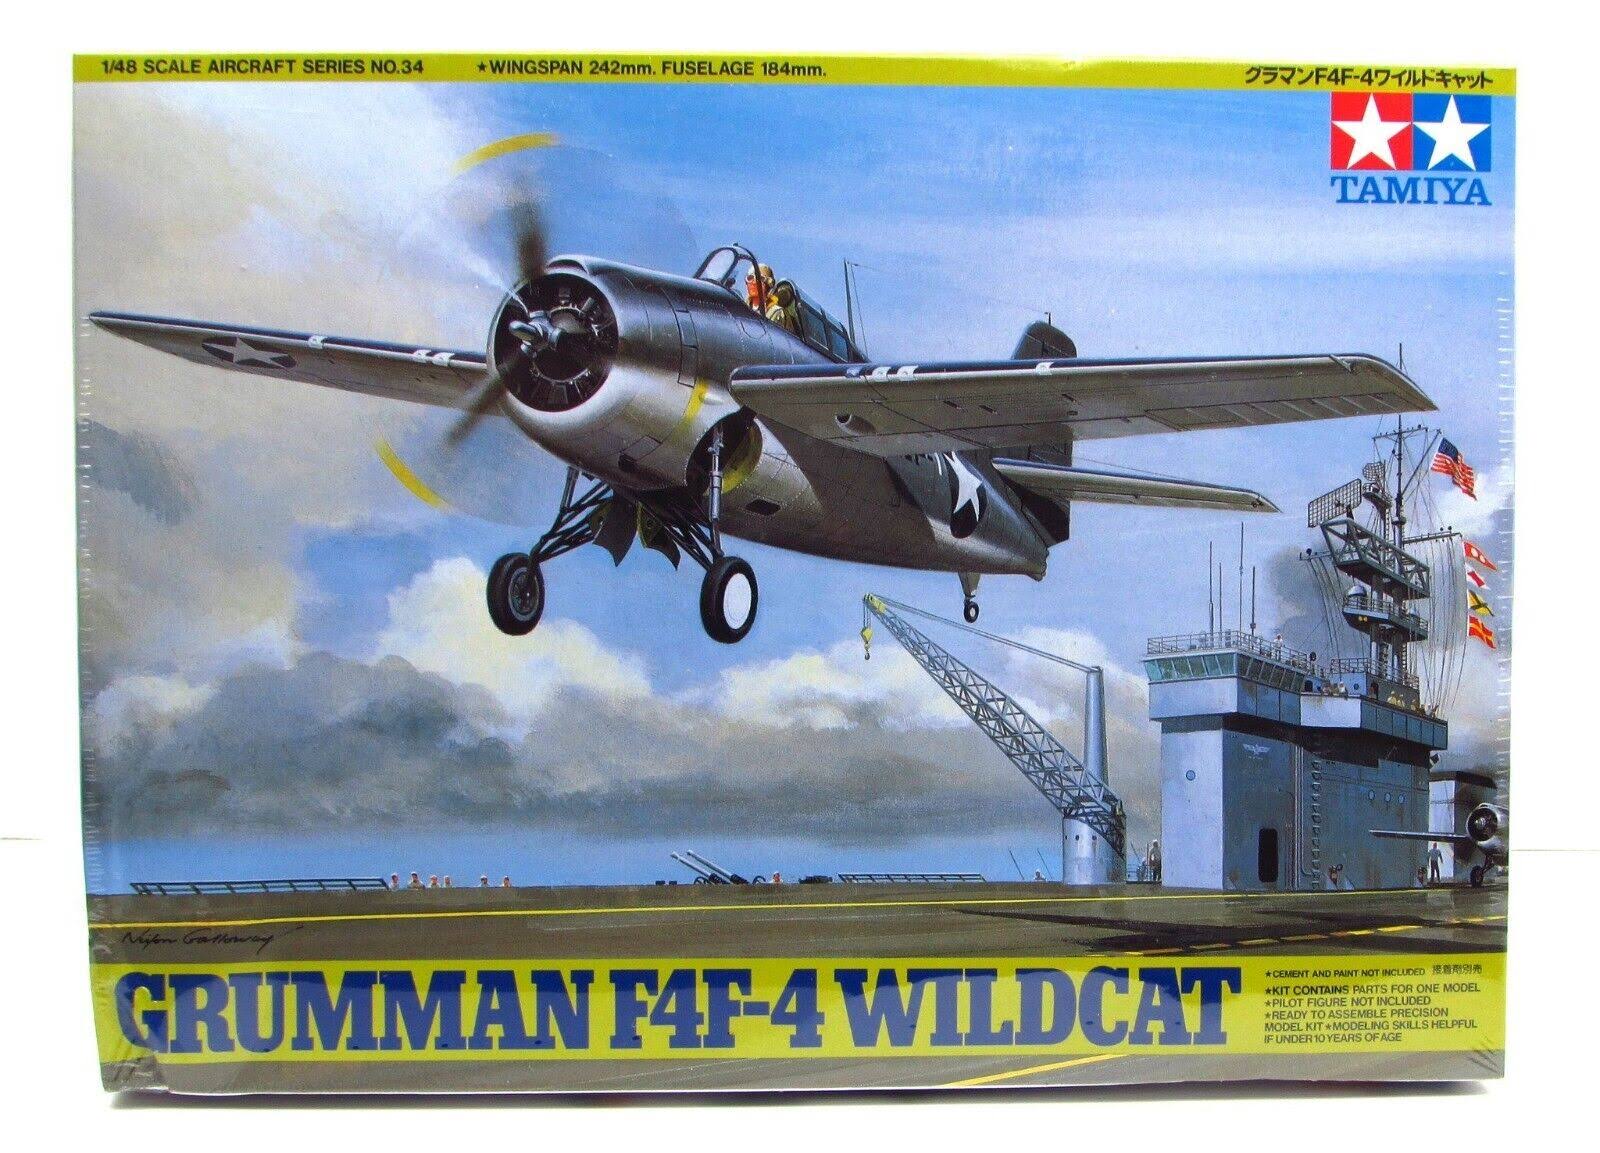 Tamiya Aircraft Model Kit - Grumman F4F-4 Wildcat